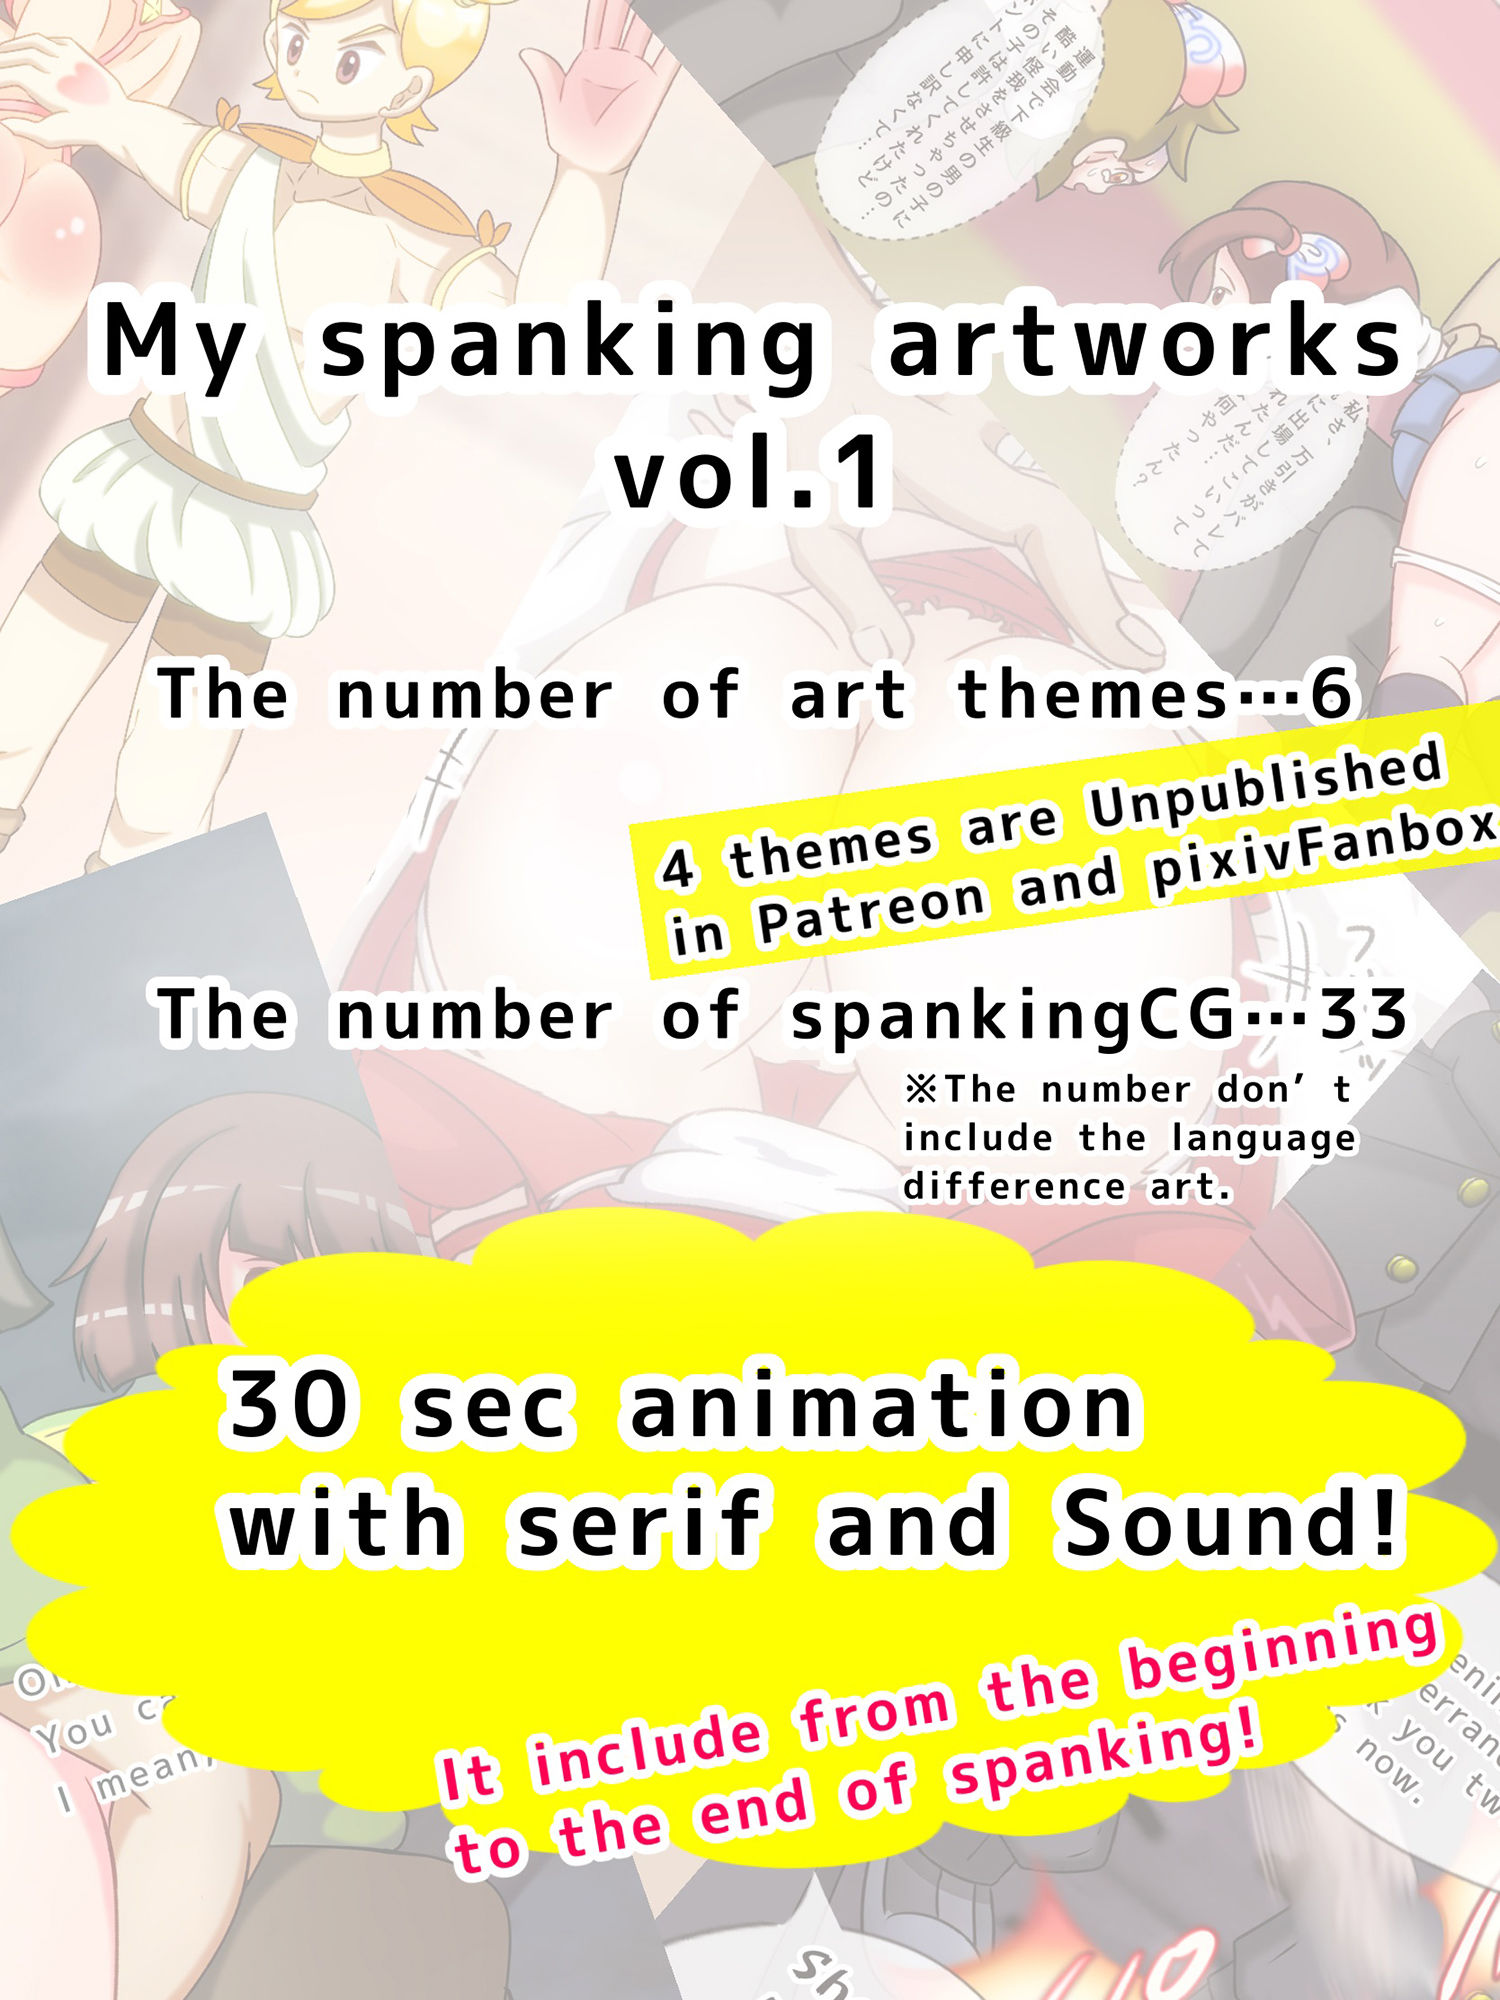 スパンキングイラスト集 my spanking artworks vol.1_3